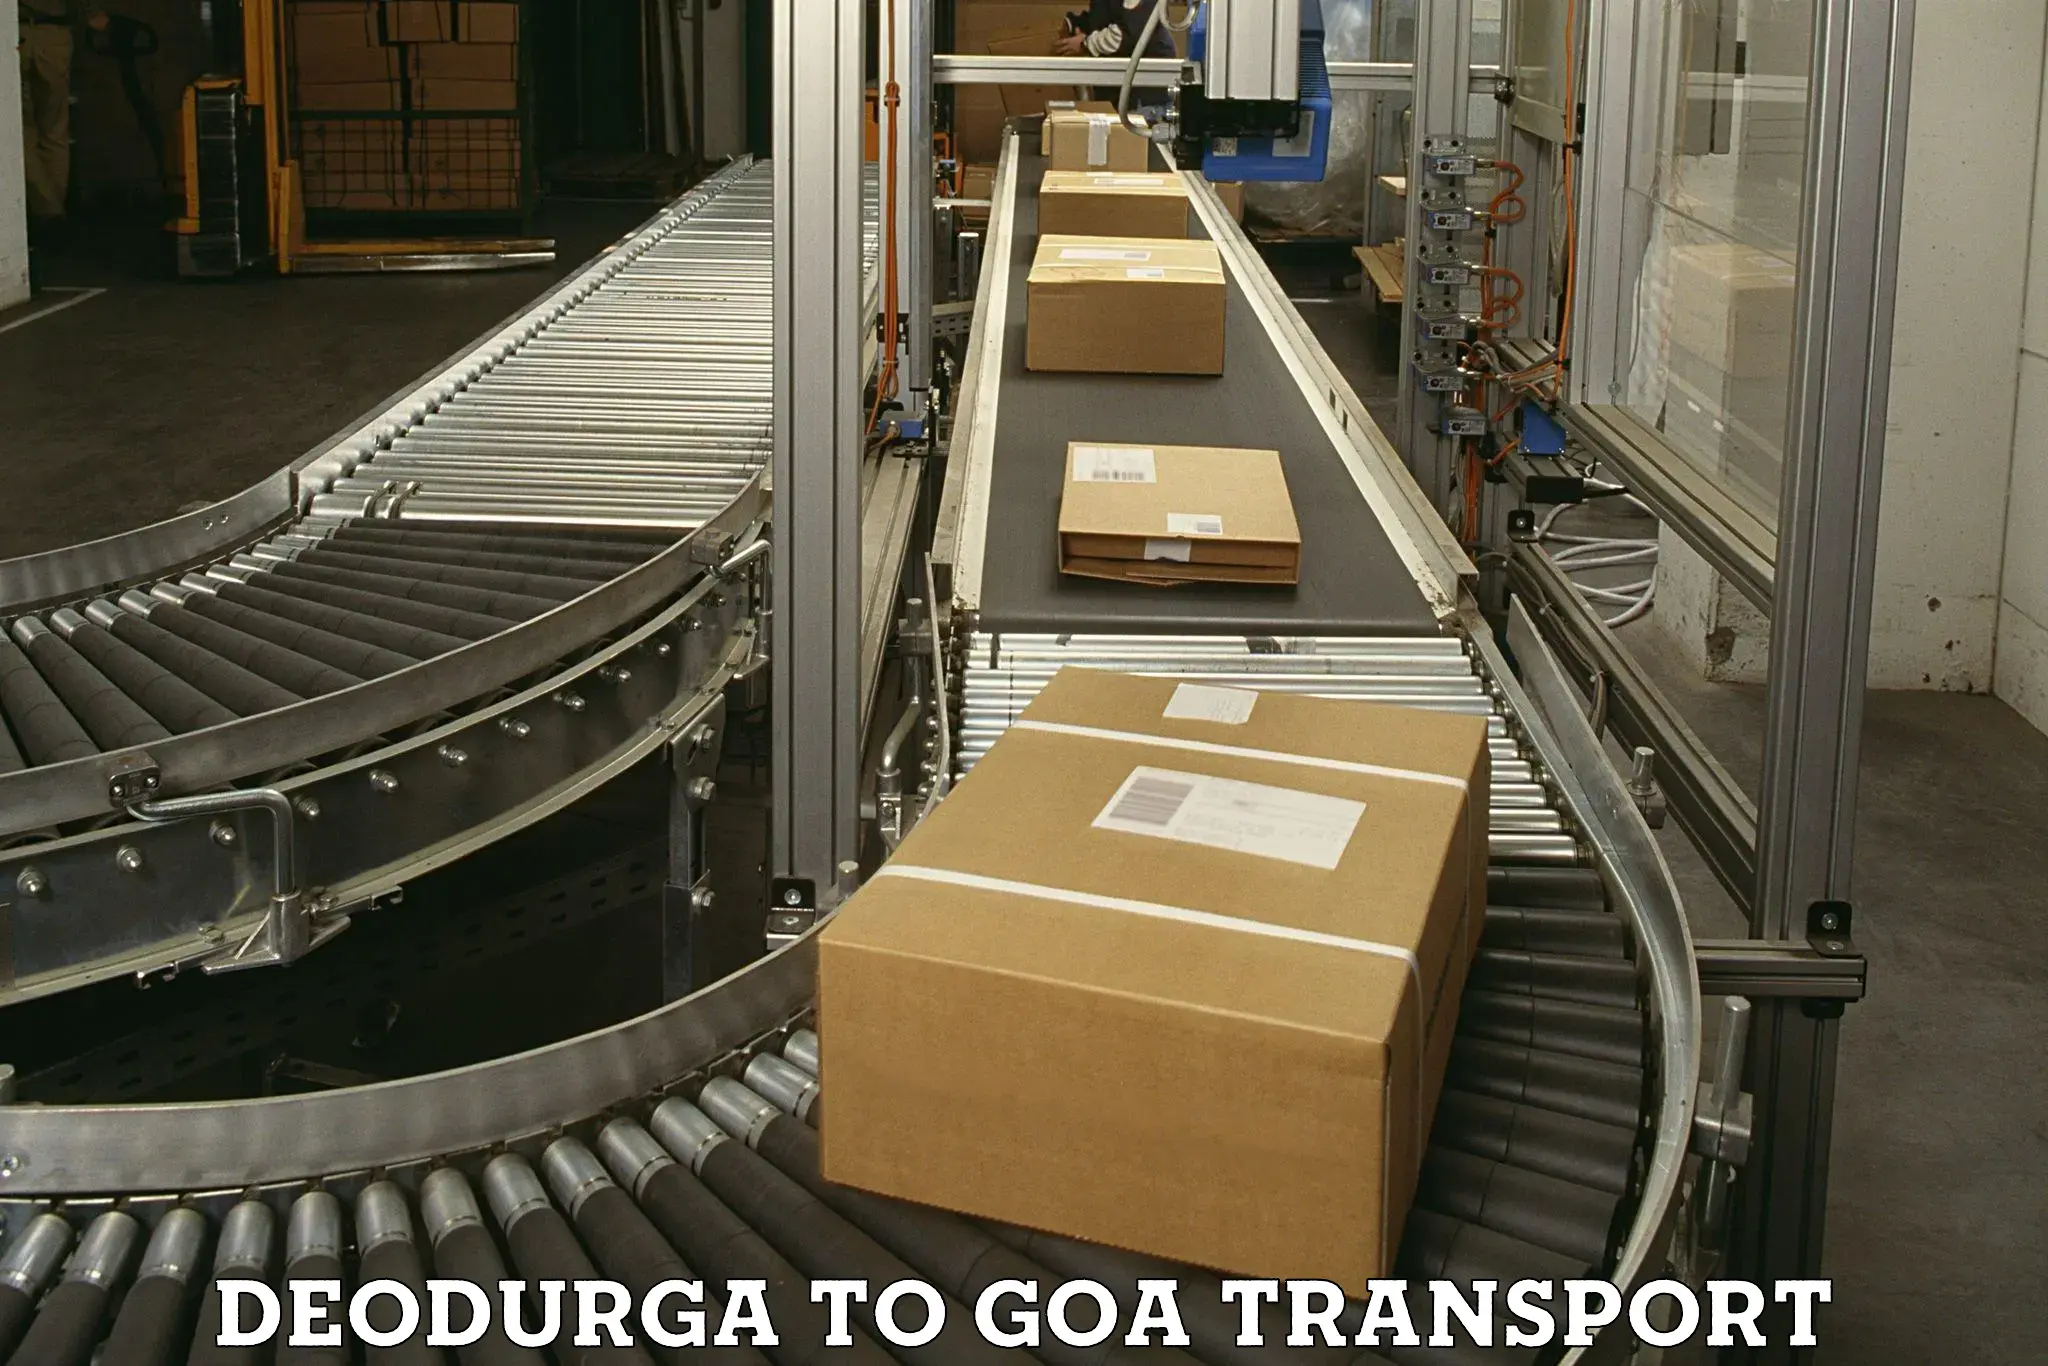 Pick up transport service in Deodurga to Vasco da Gama